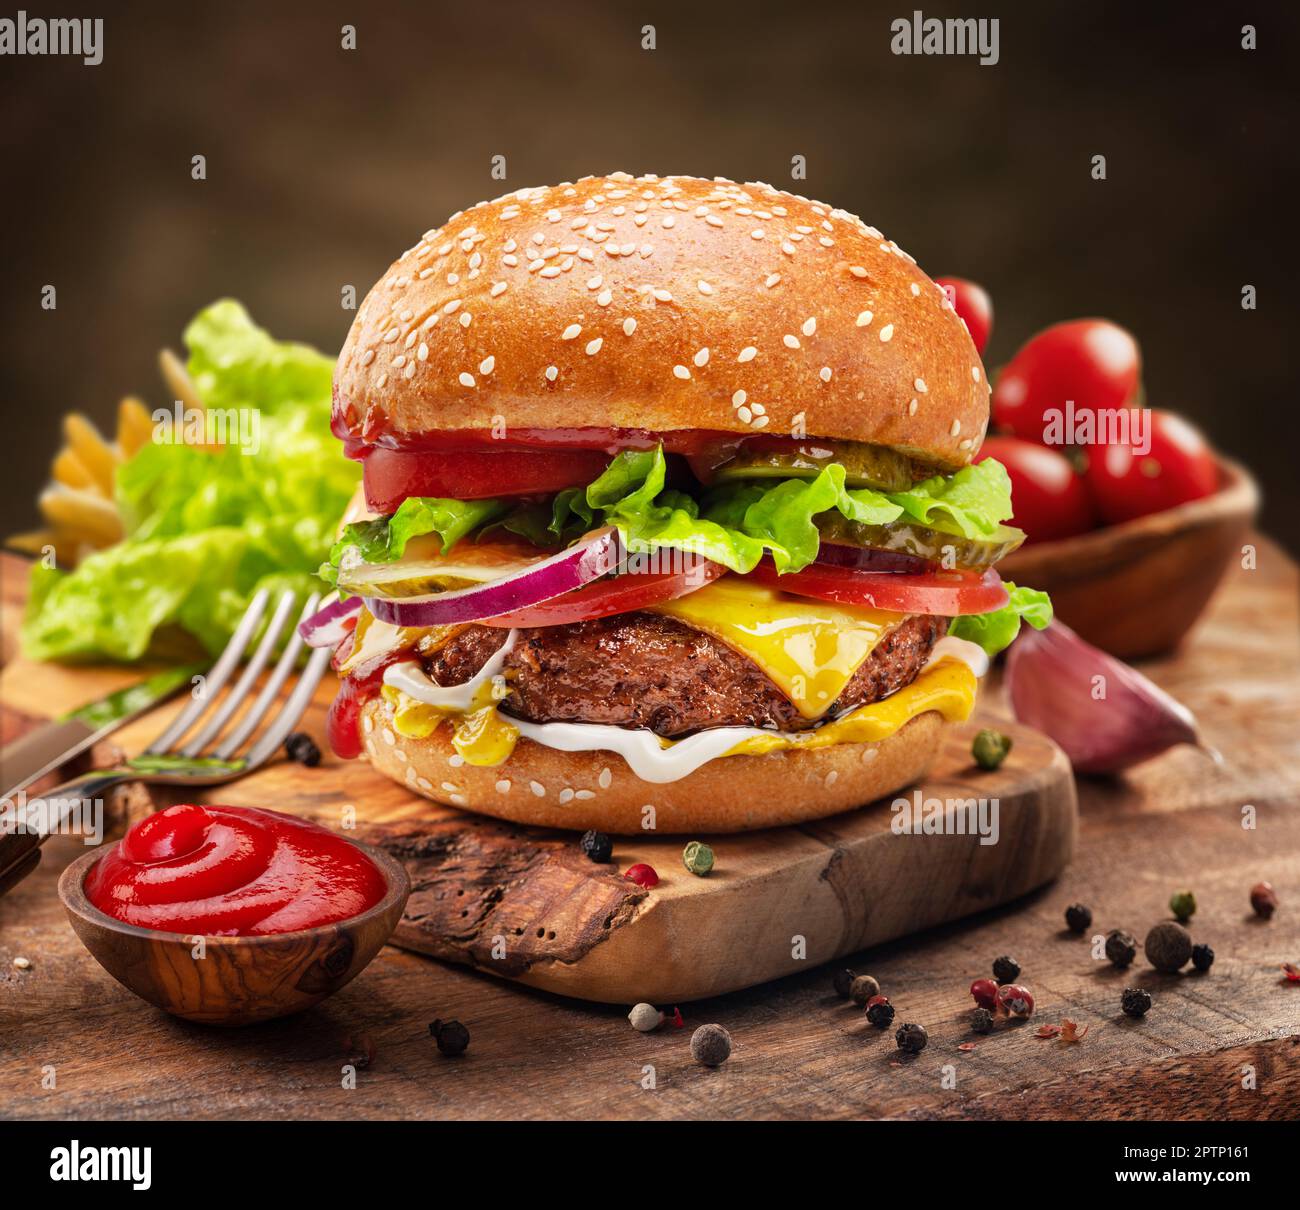 Savoureux cheeseburger ou hamburger sur plateau en bois, épices et légumes à proximité. Banque D'Images